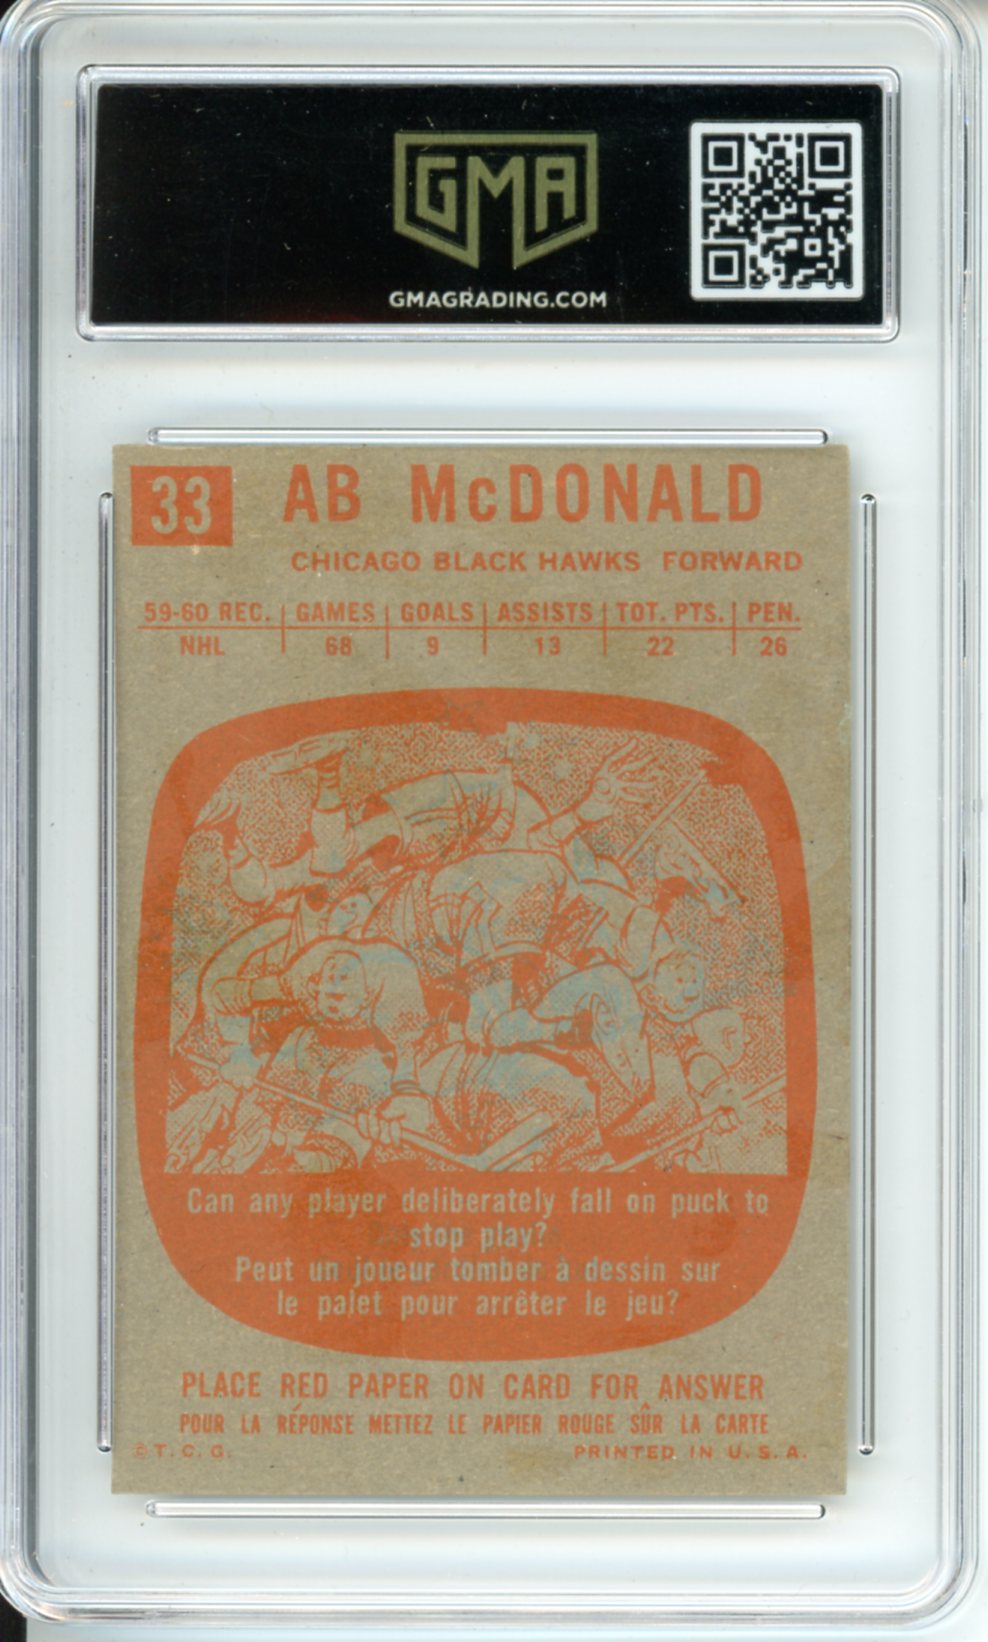 1960 Topps Ab McDonald #33 Graded Hockey Card GMA 6